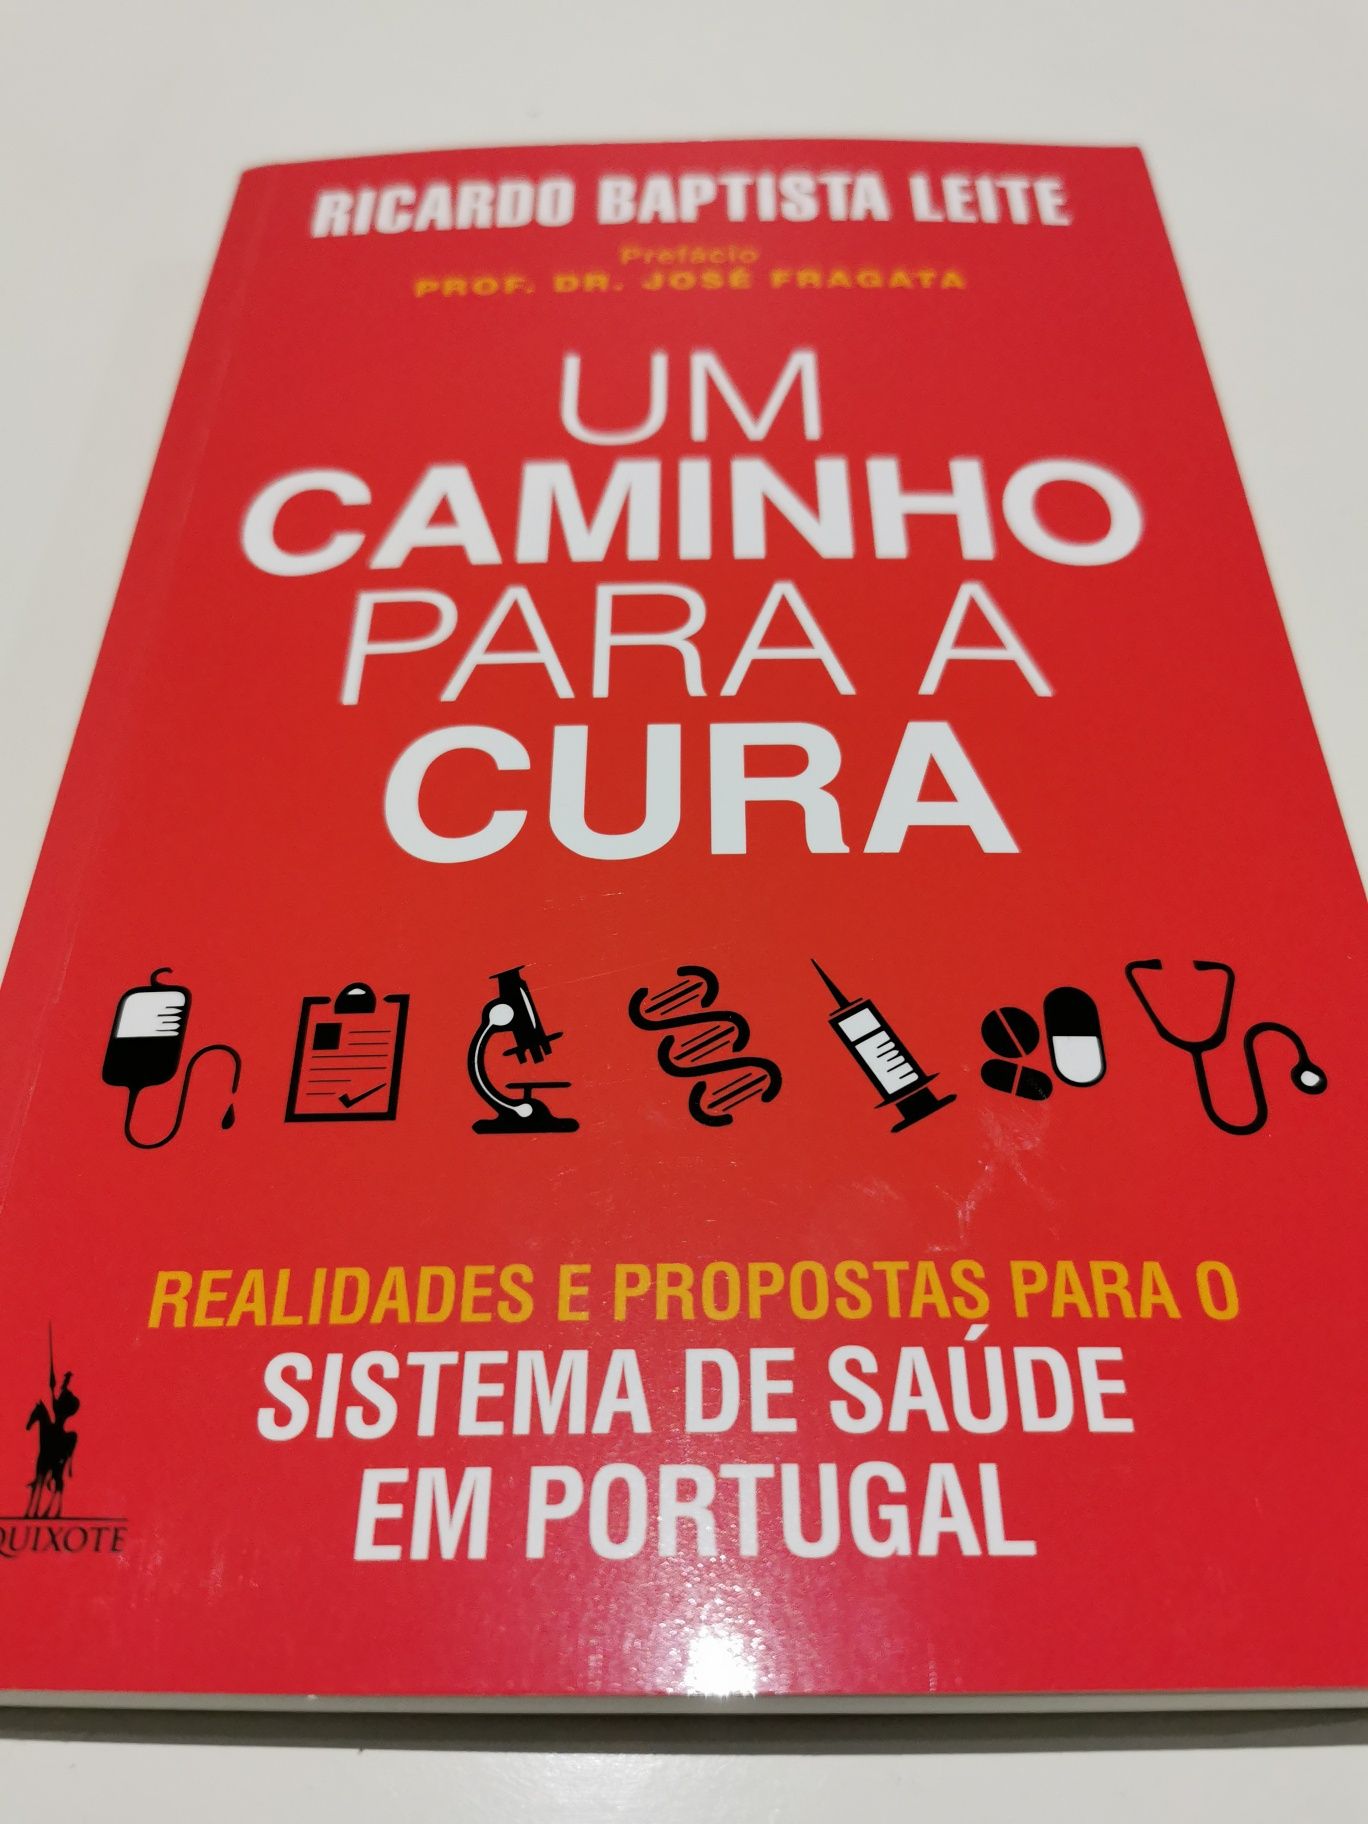 Um Caminho para a Cura, O Sistema de Saúde em Portugal

de Ricardo B.